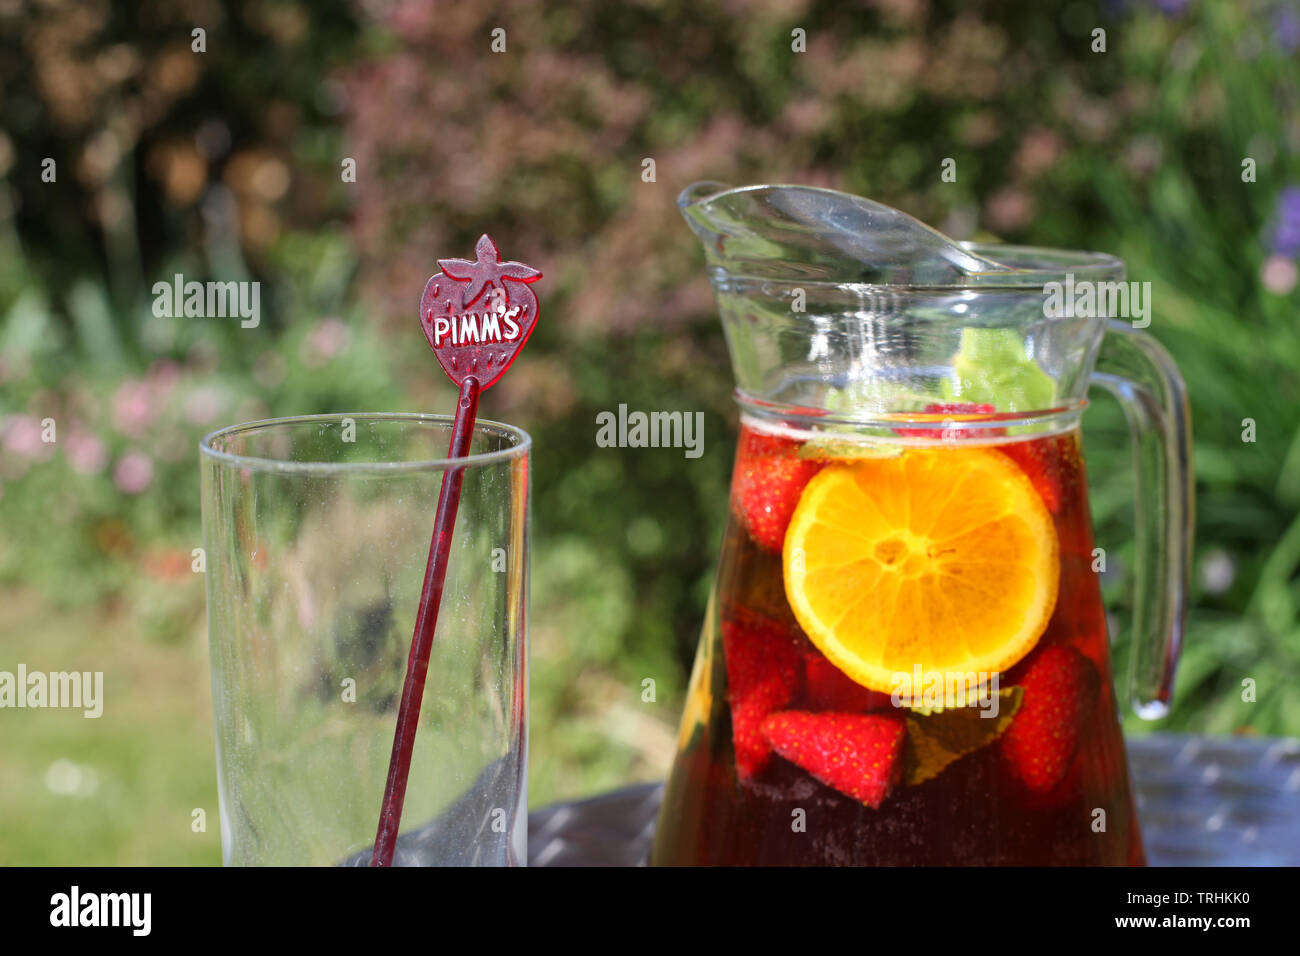 Pichet de limonade en extérieur et Pimms sunshine avec verre vide Banque D'Images